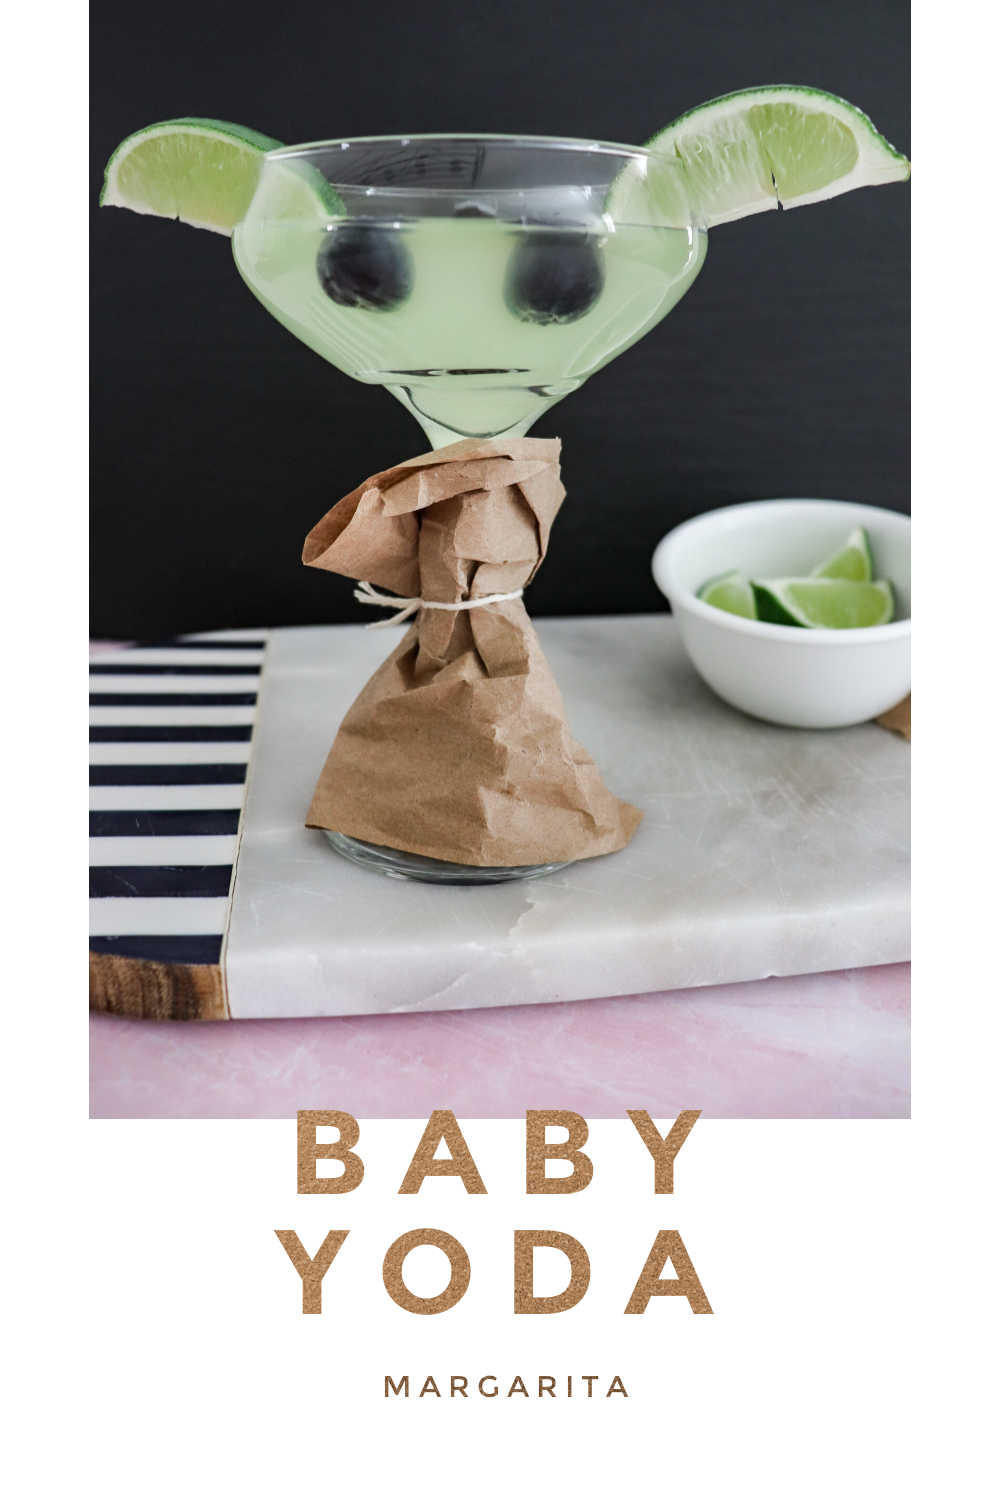 Baby Yoda Margarita